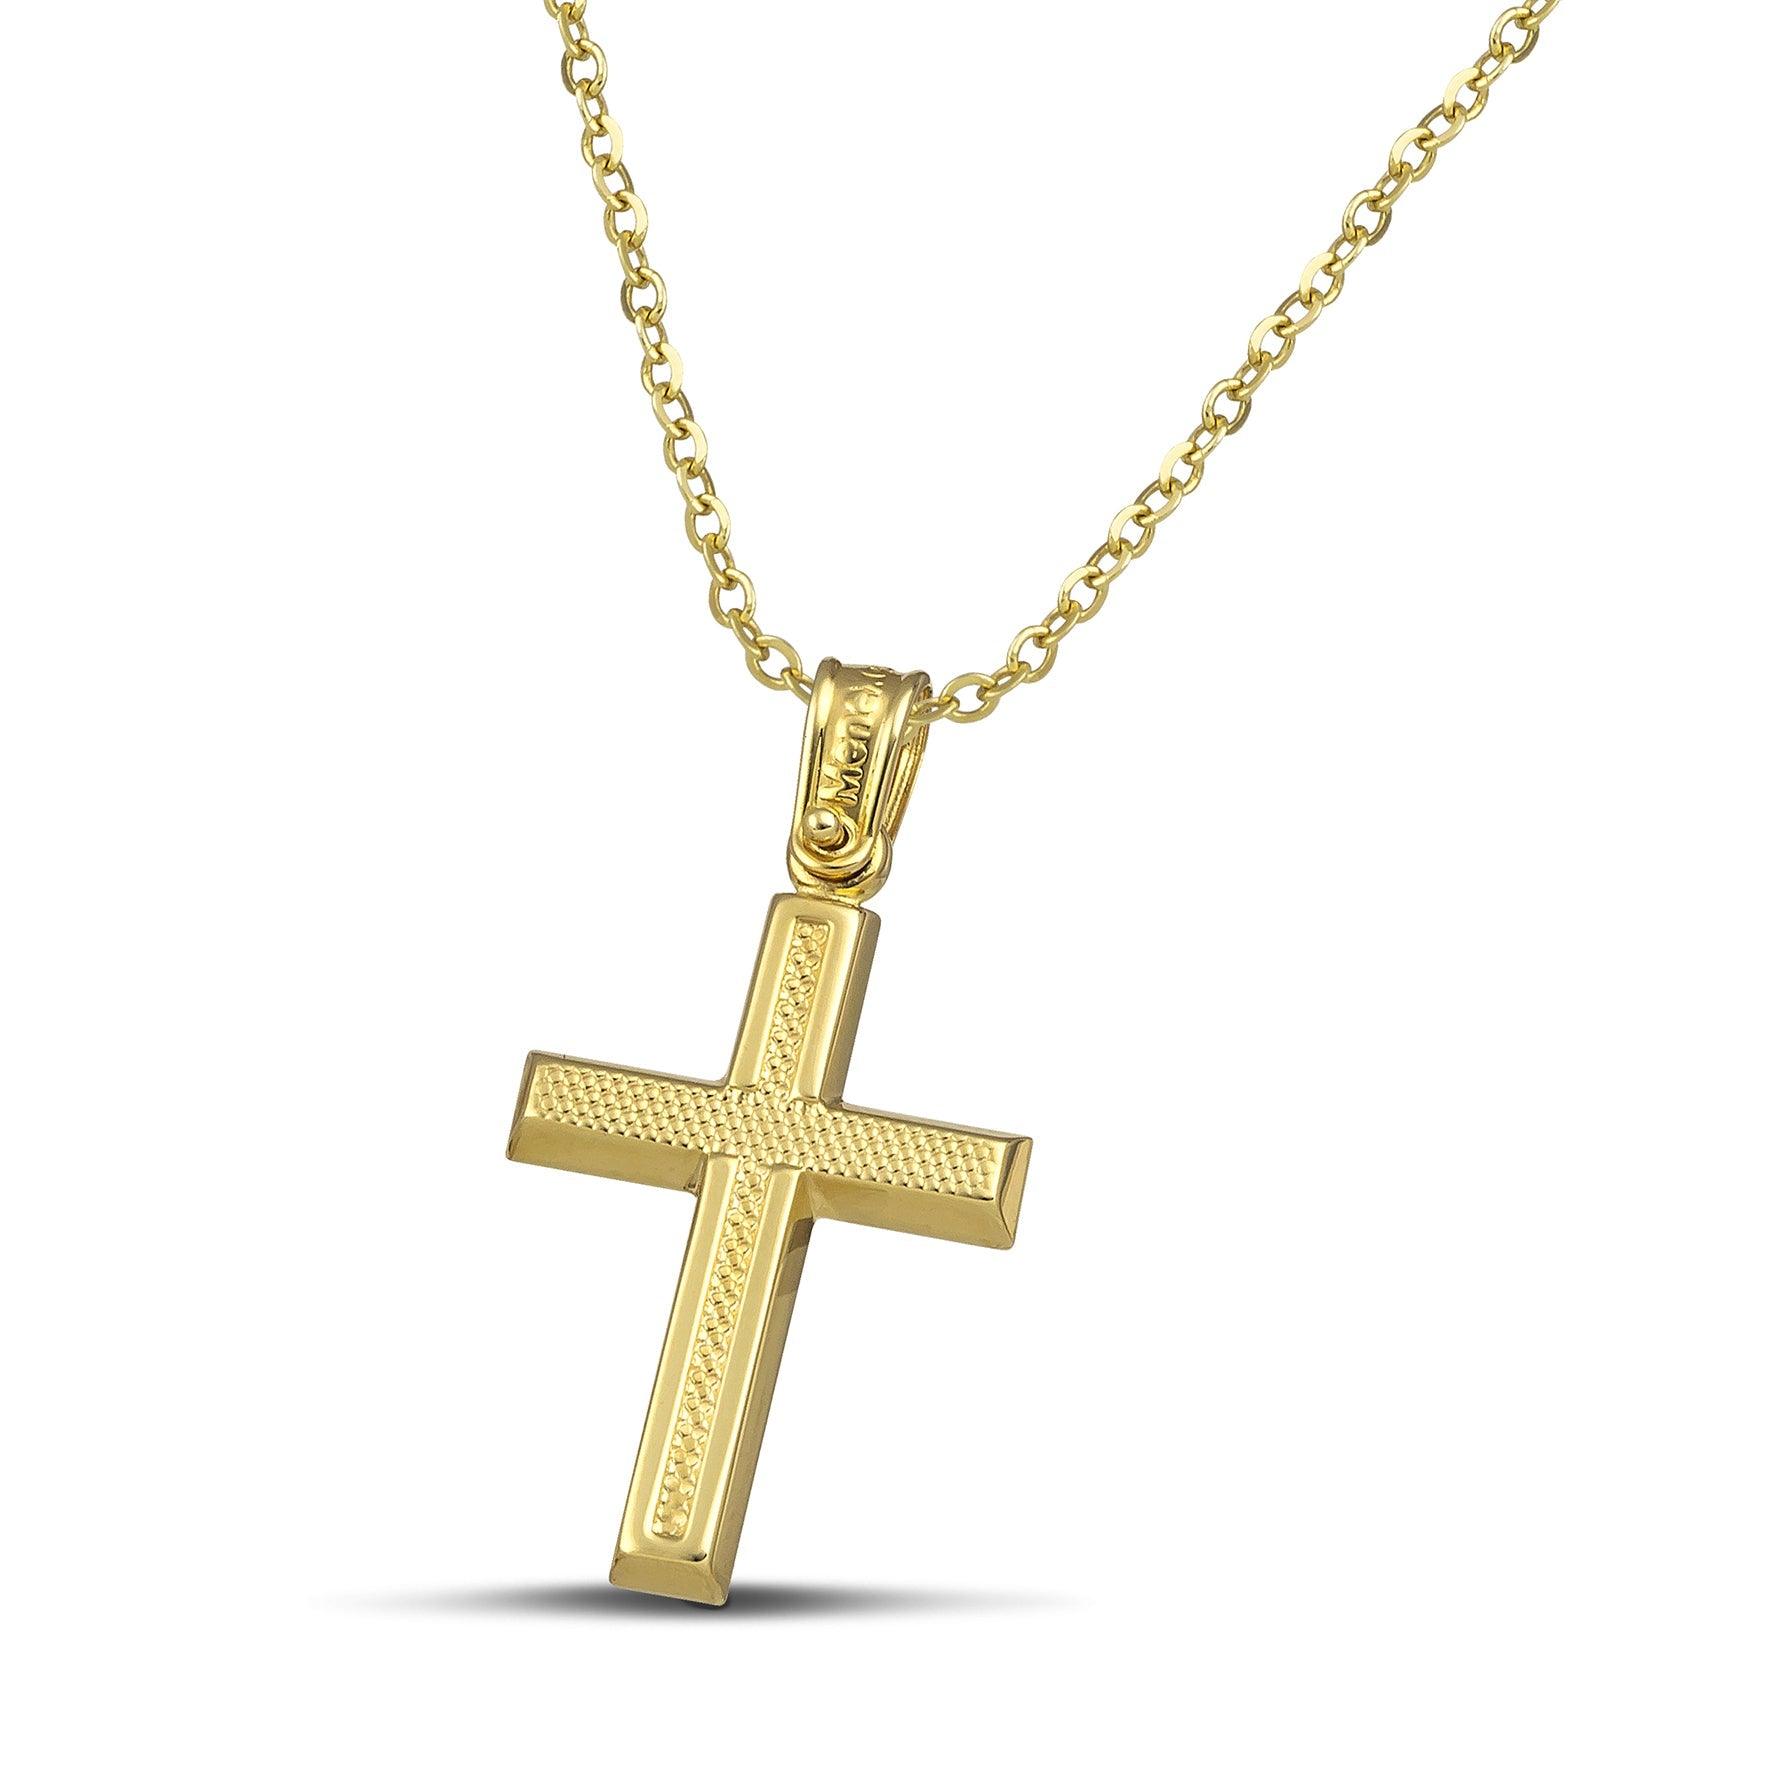 Μοντέρνος σταυρός για κορίτσι από χρυσό Κ14 ανάγλυφος. Φορεμένος σε λεπτή αλυσίδα.